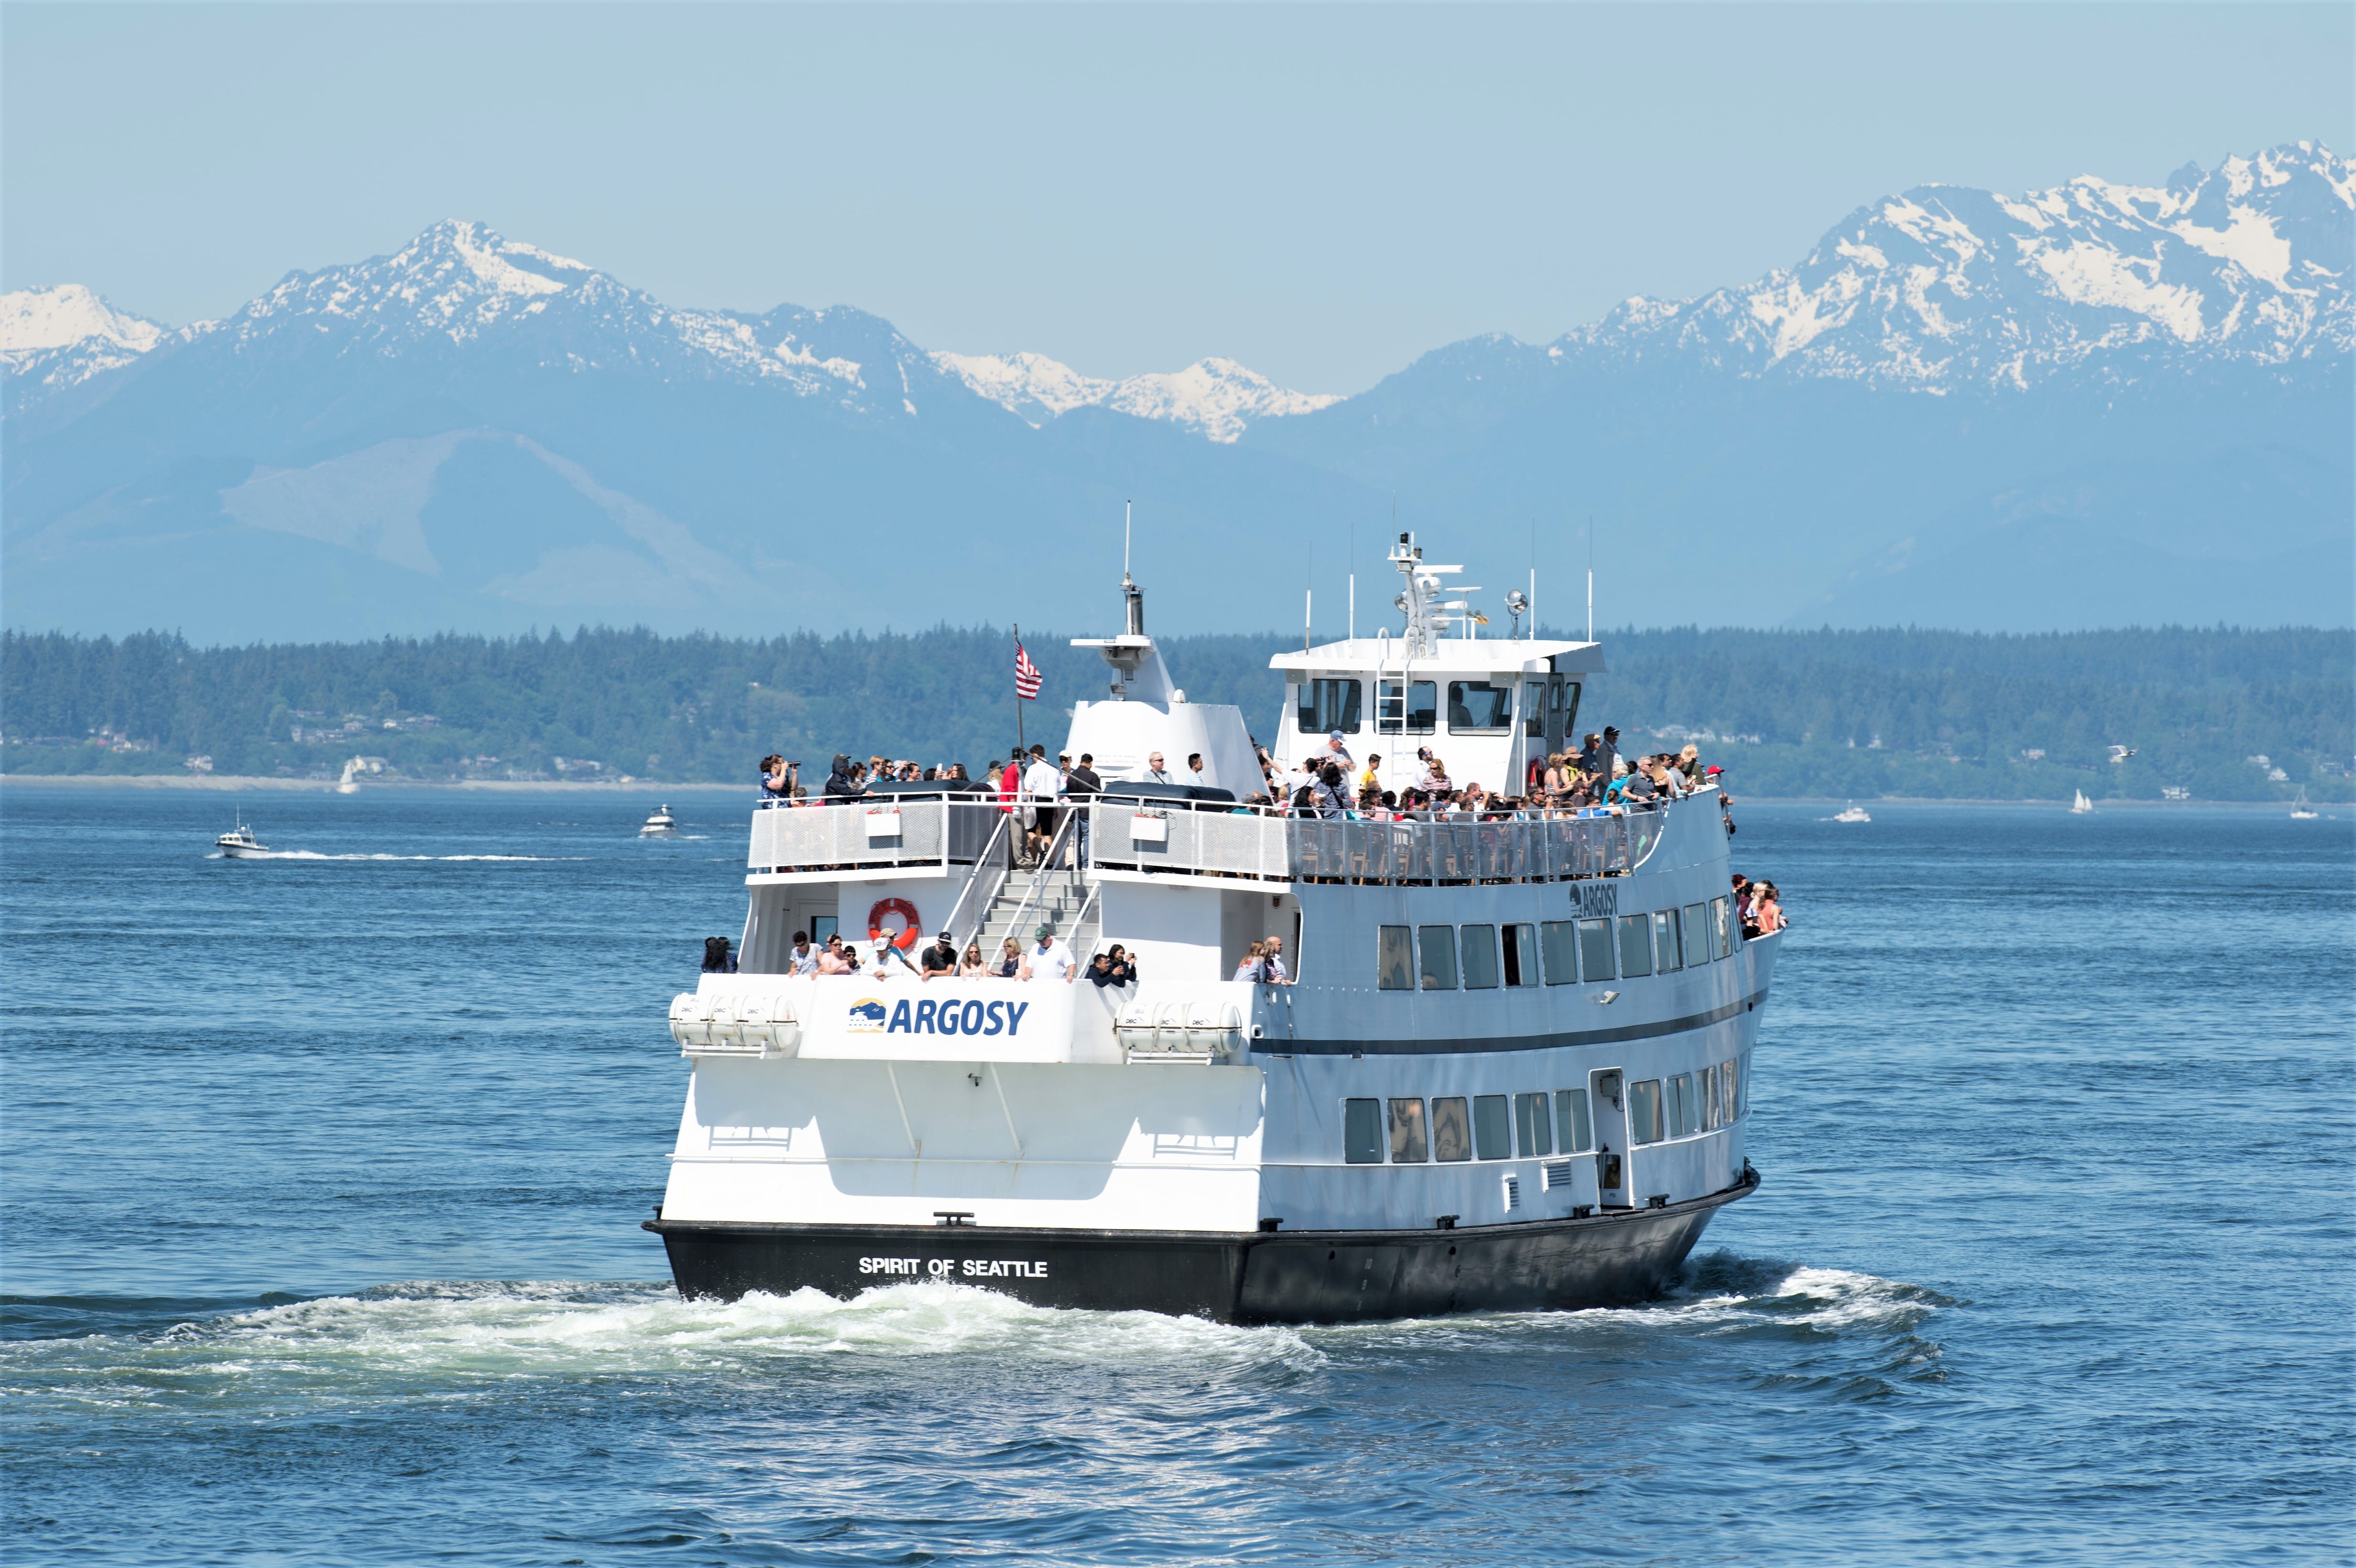 Seattle Argosy Cruise | Space Needle & Elliott Bay | 1 hour - KKday